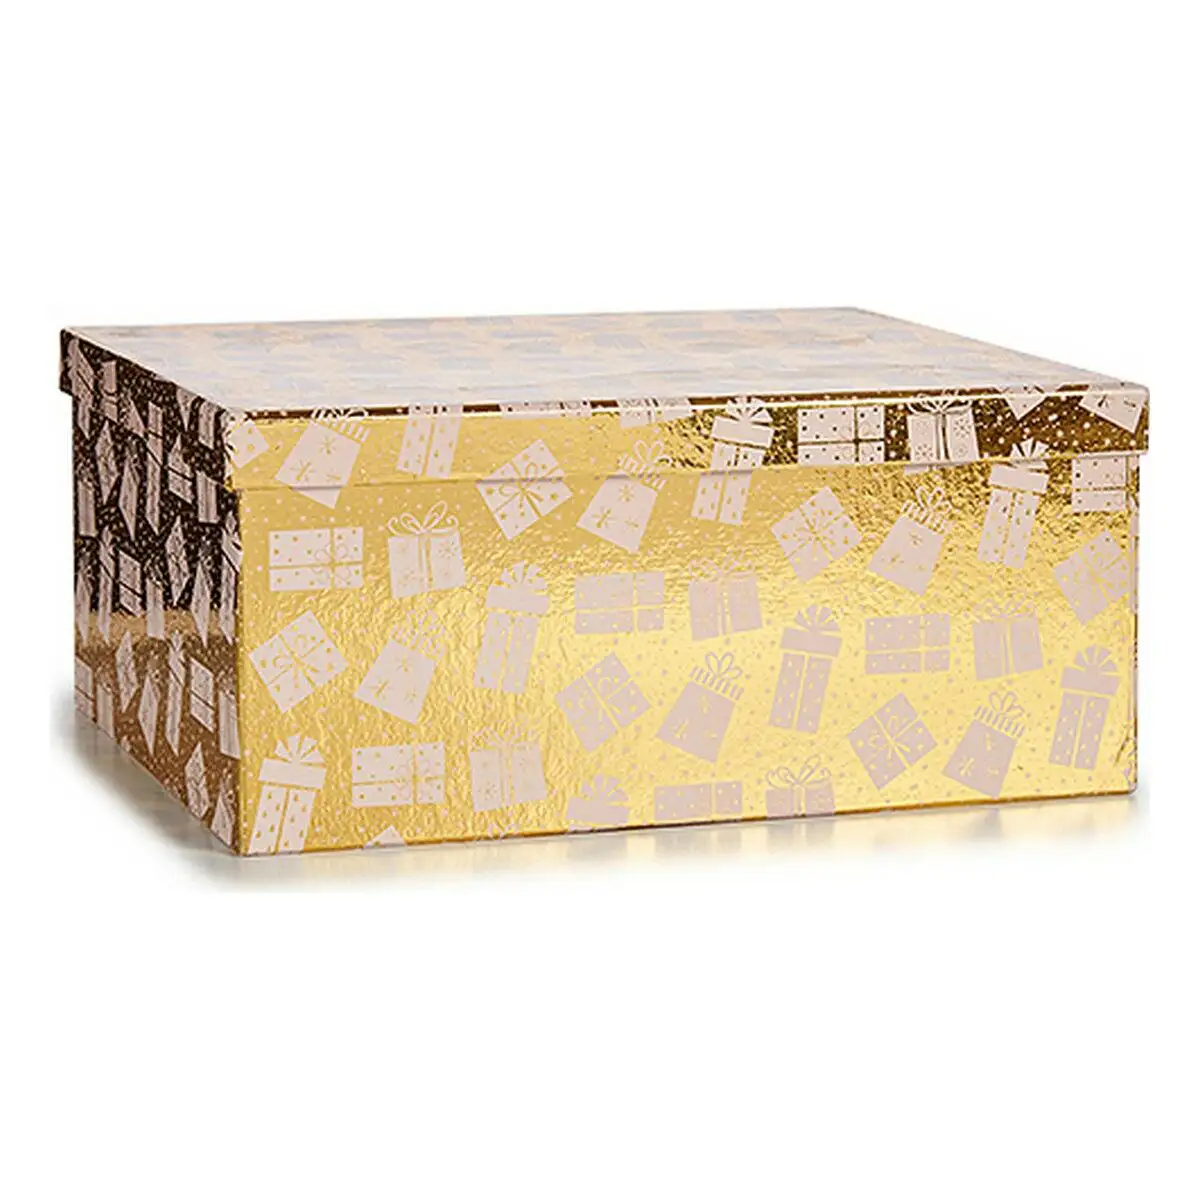 Set de boites decoratives noel boite cadeau dore carton_7593. DIAYTAR SENEGAL - Où Choisir Devient un Plaisir. Découvrez notre boutique en ligne et choisissez parmi une variété de produits qui satisferont tous vos besoins.